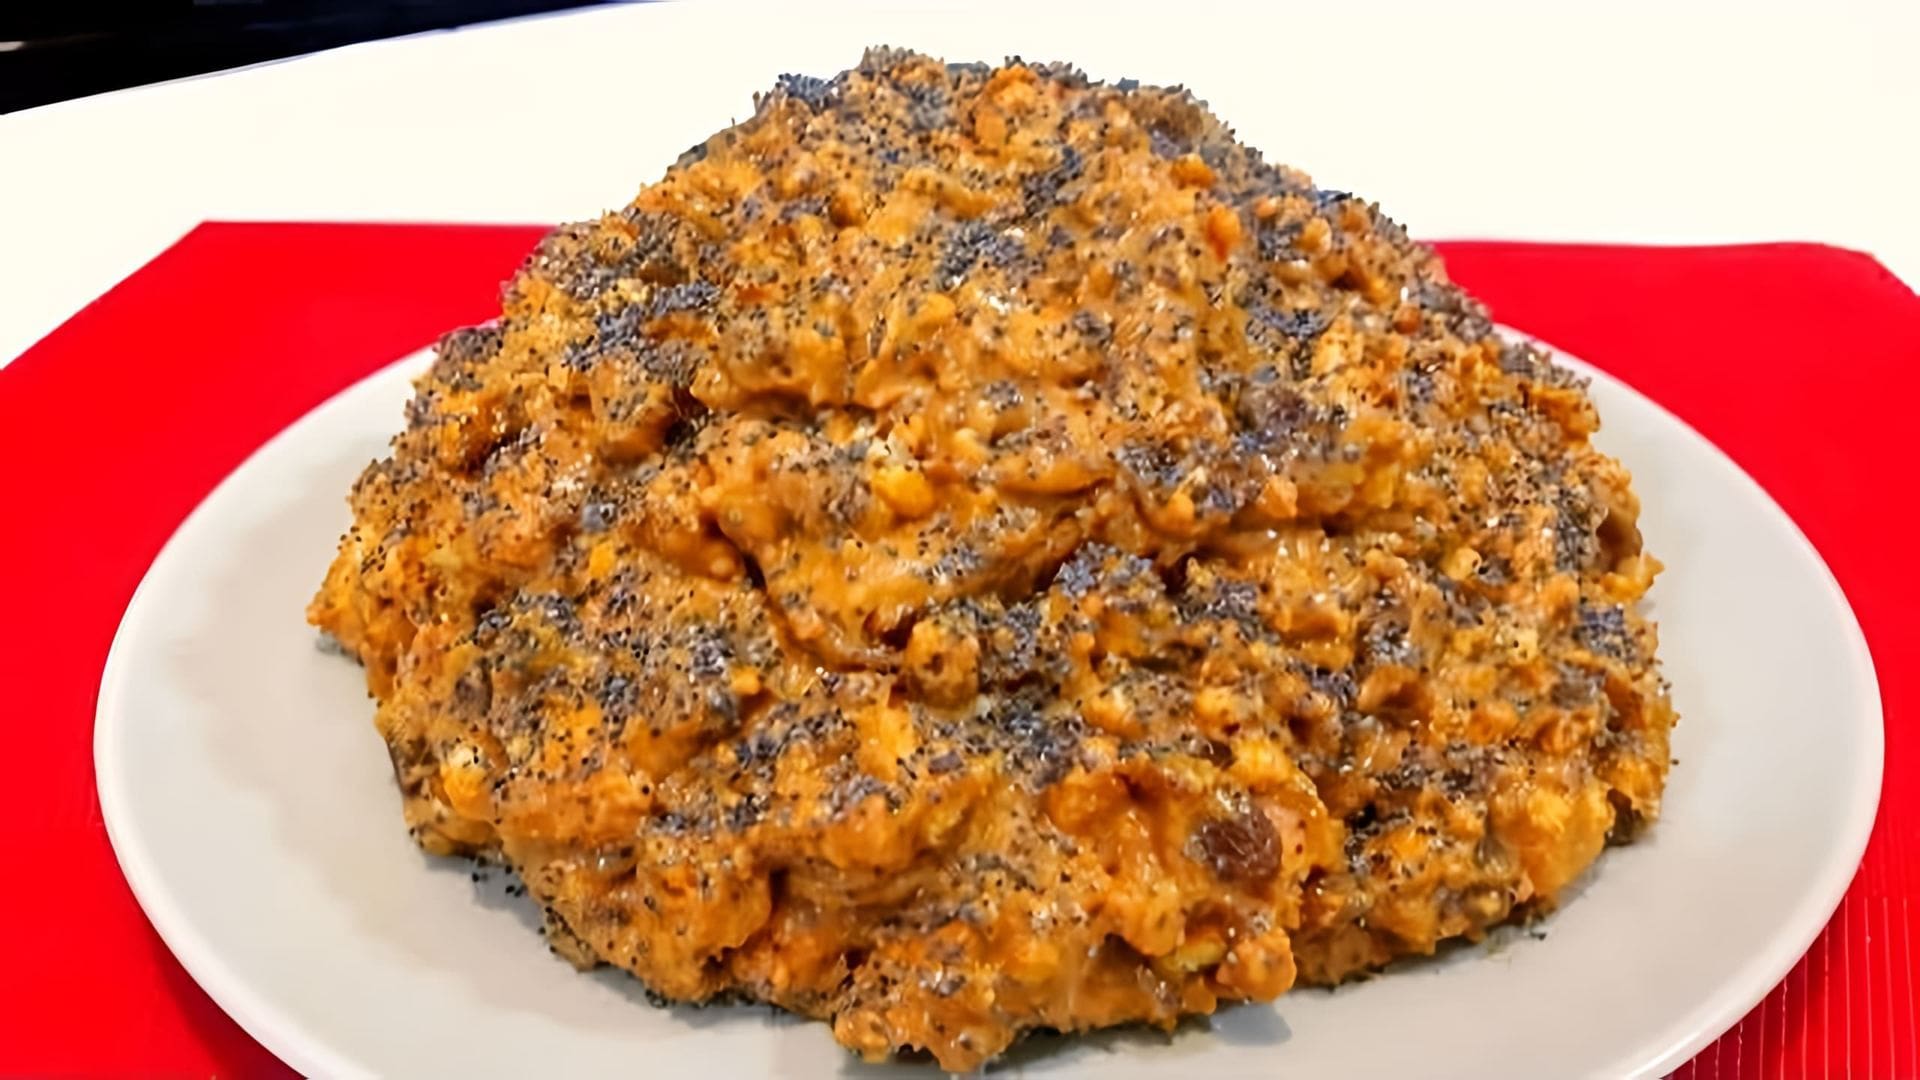 В этом видео демонстрируется рецепт приготовления торта "Муравейник" без выпечки